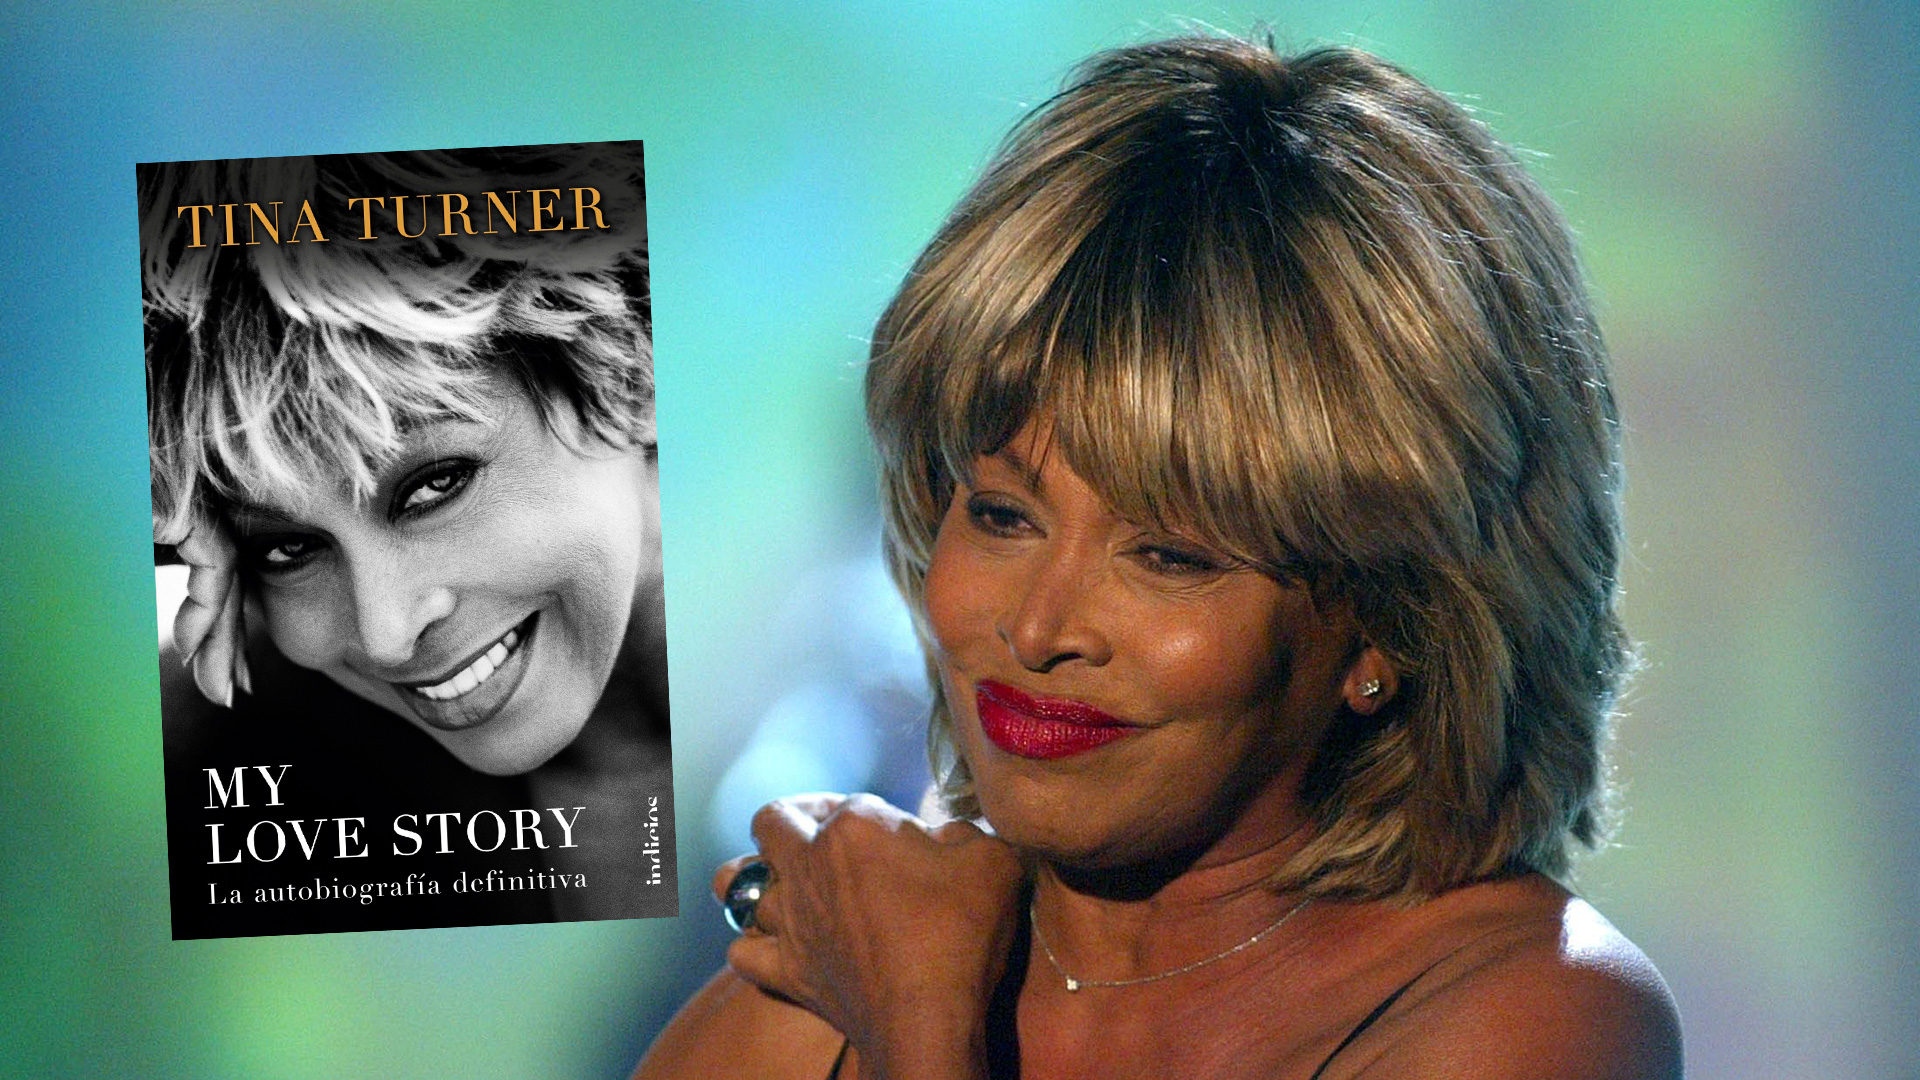  “Hice cosas peligrosas, y me hicieron cosas peligrosas”: así empieza la autobiografía de Tina Turner